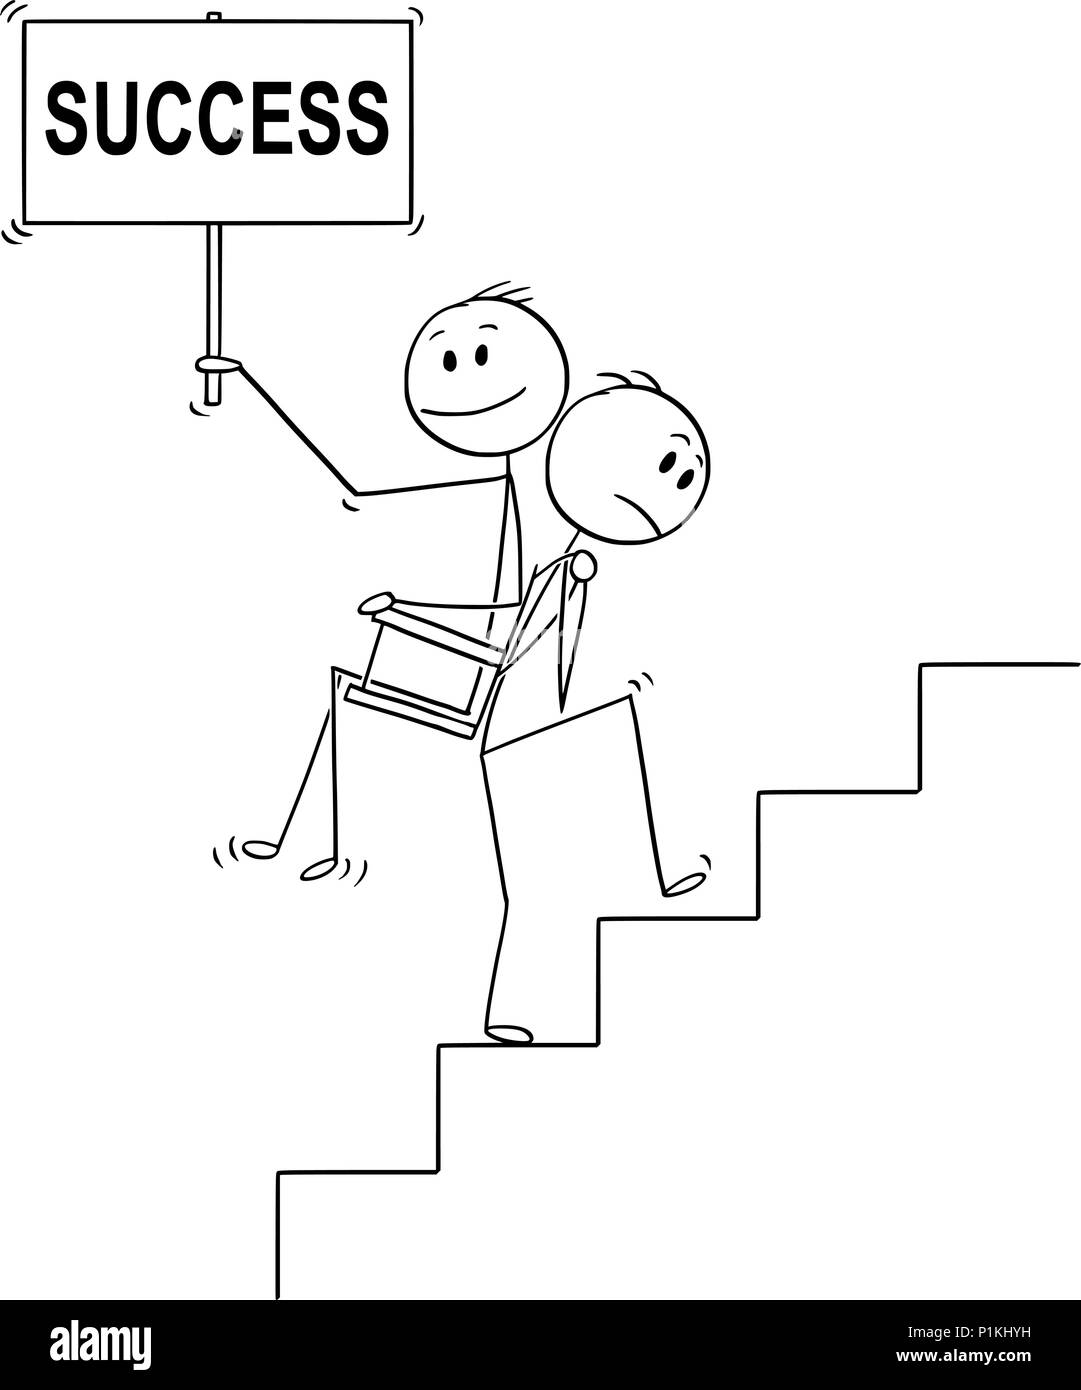 Caricature de l'homme ou homme transportant un autre homme ou patron avec succès signer à l'étage Illustration de Vecteur